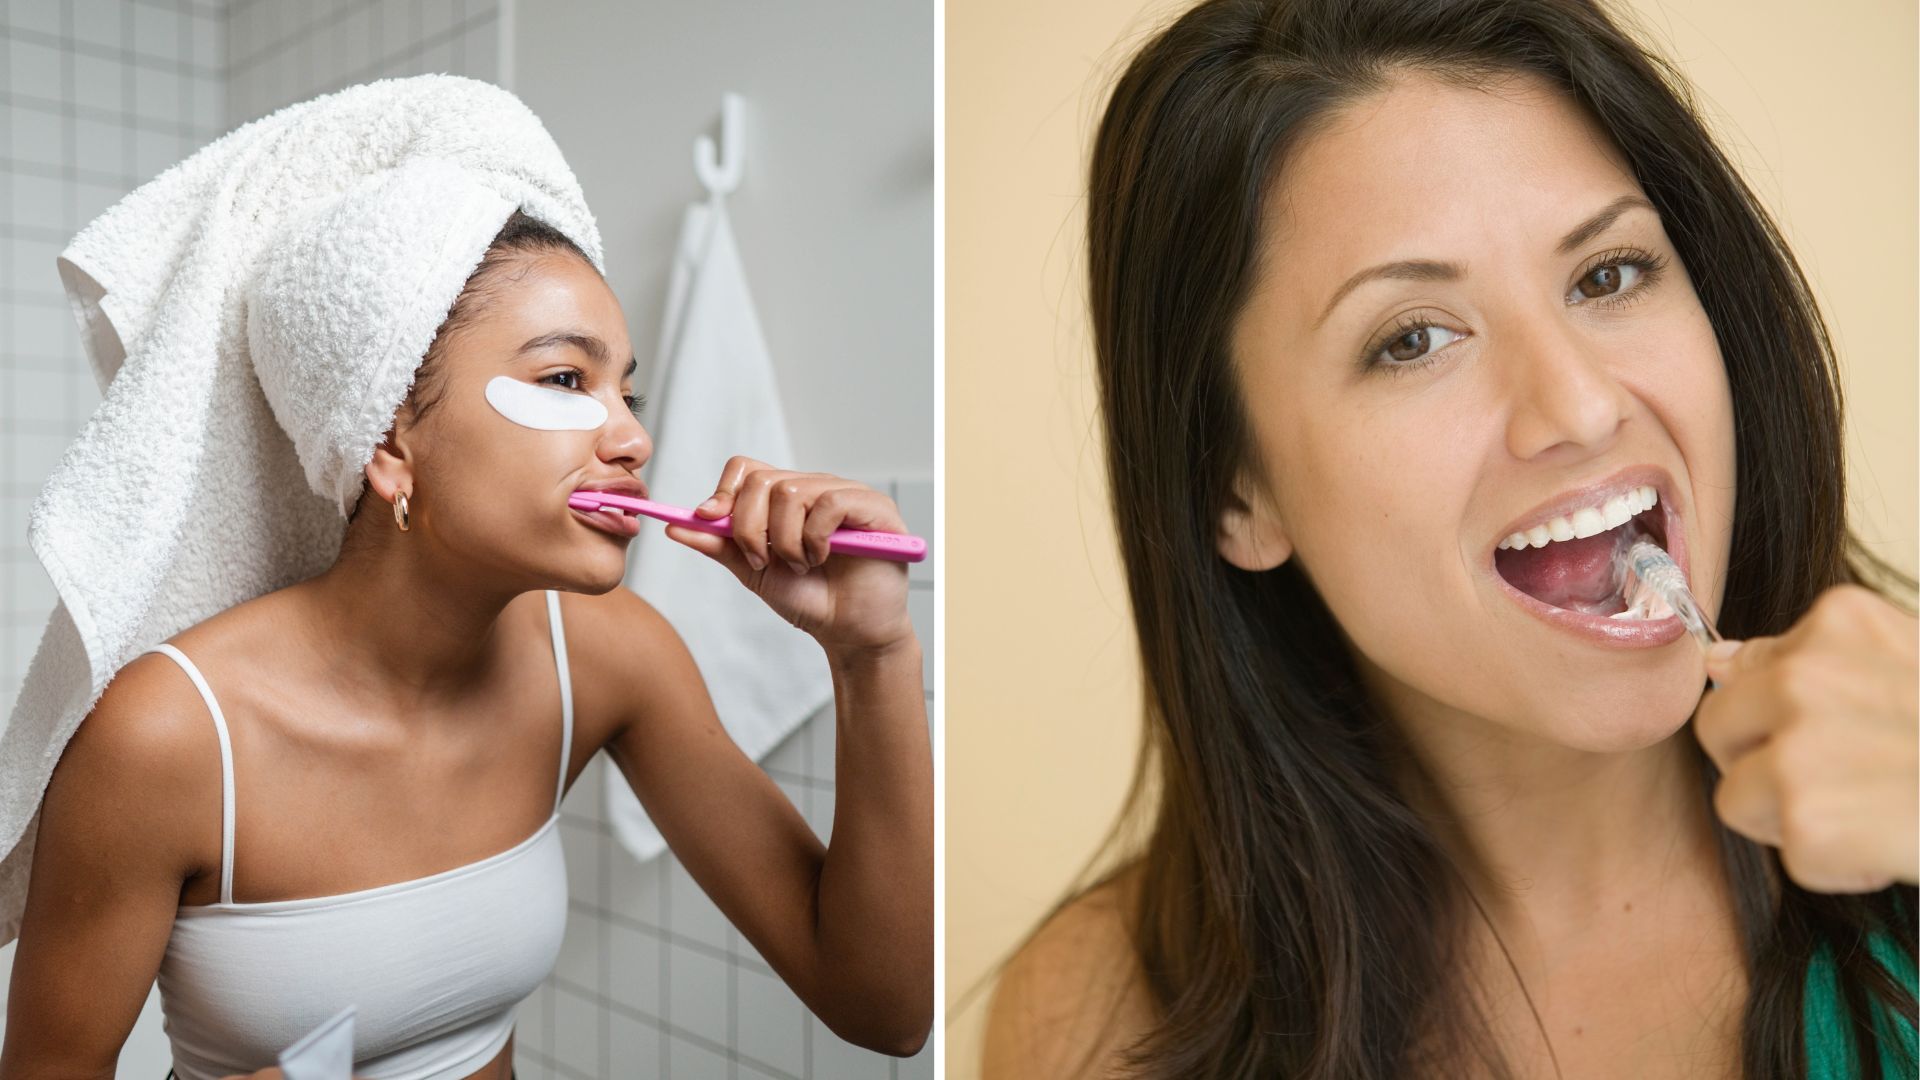 2 women brushing their teeth.